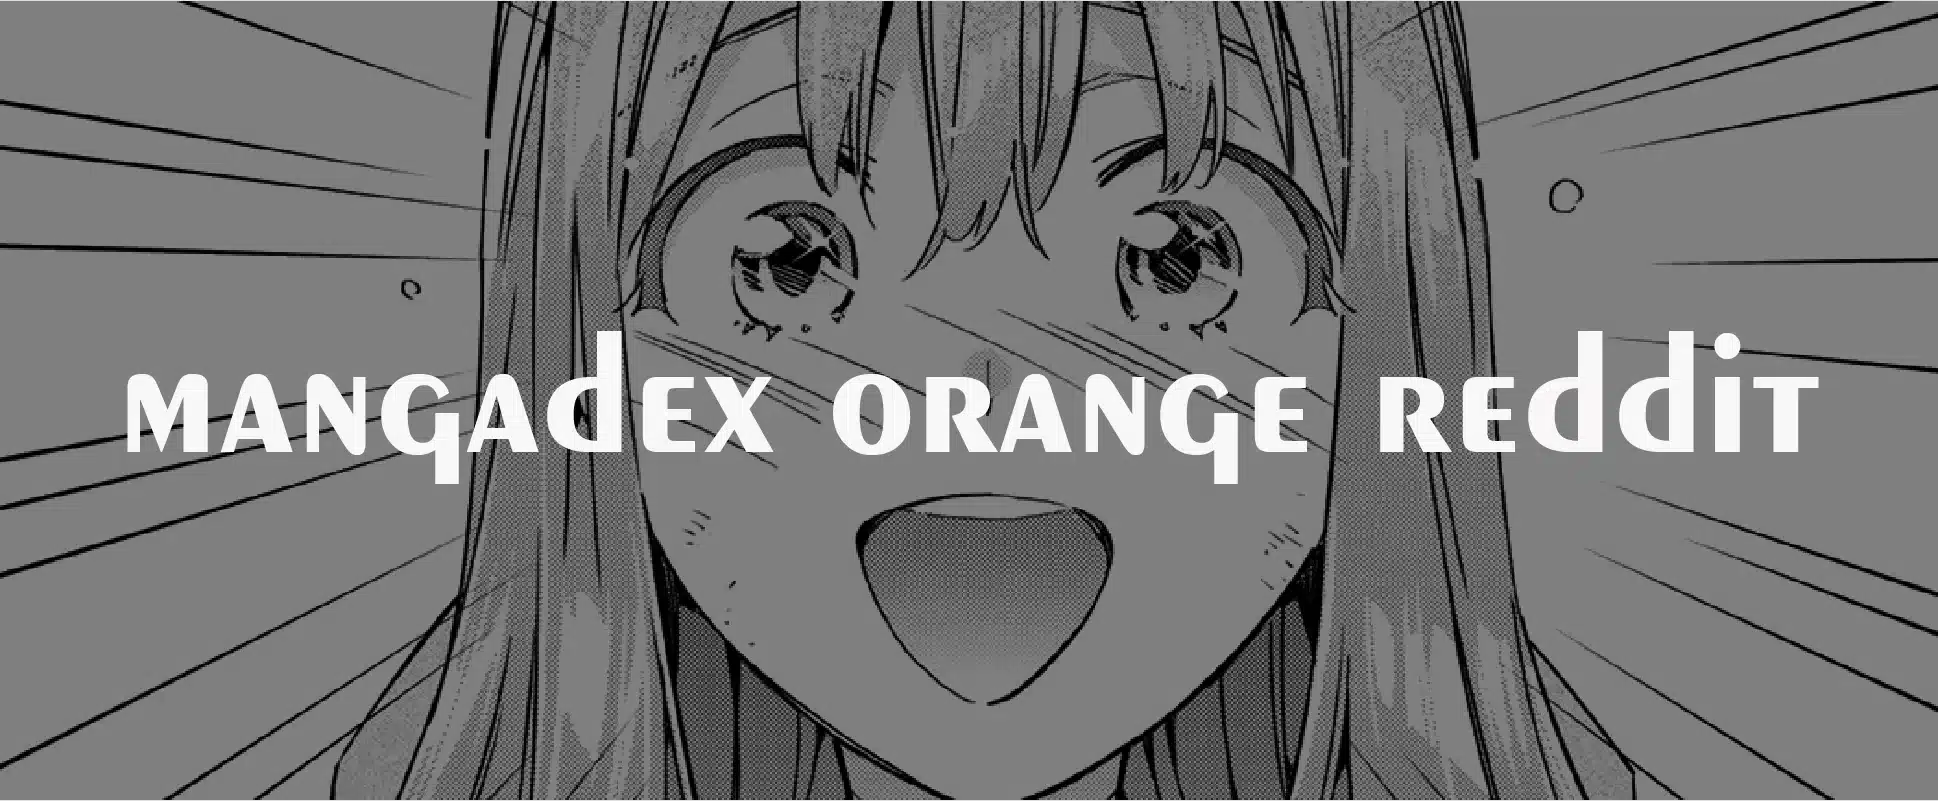 mangadex orange reddit